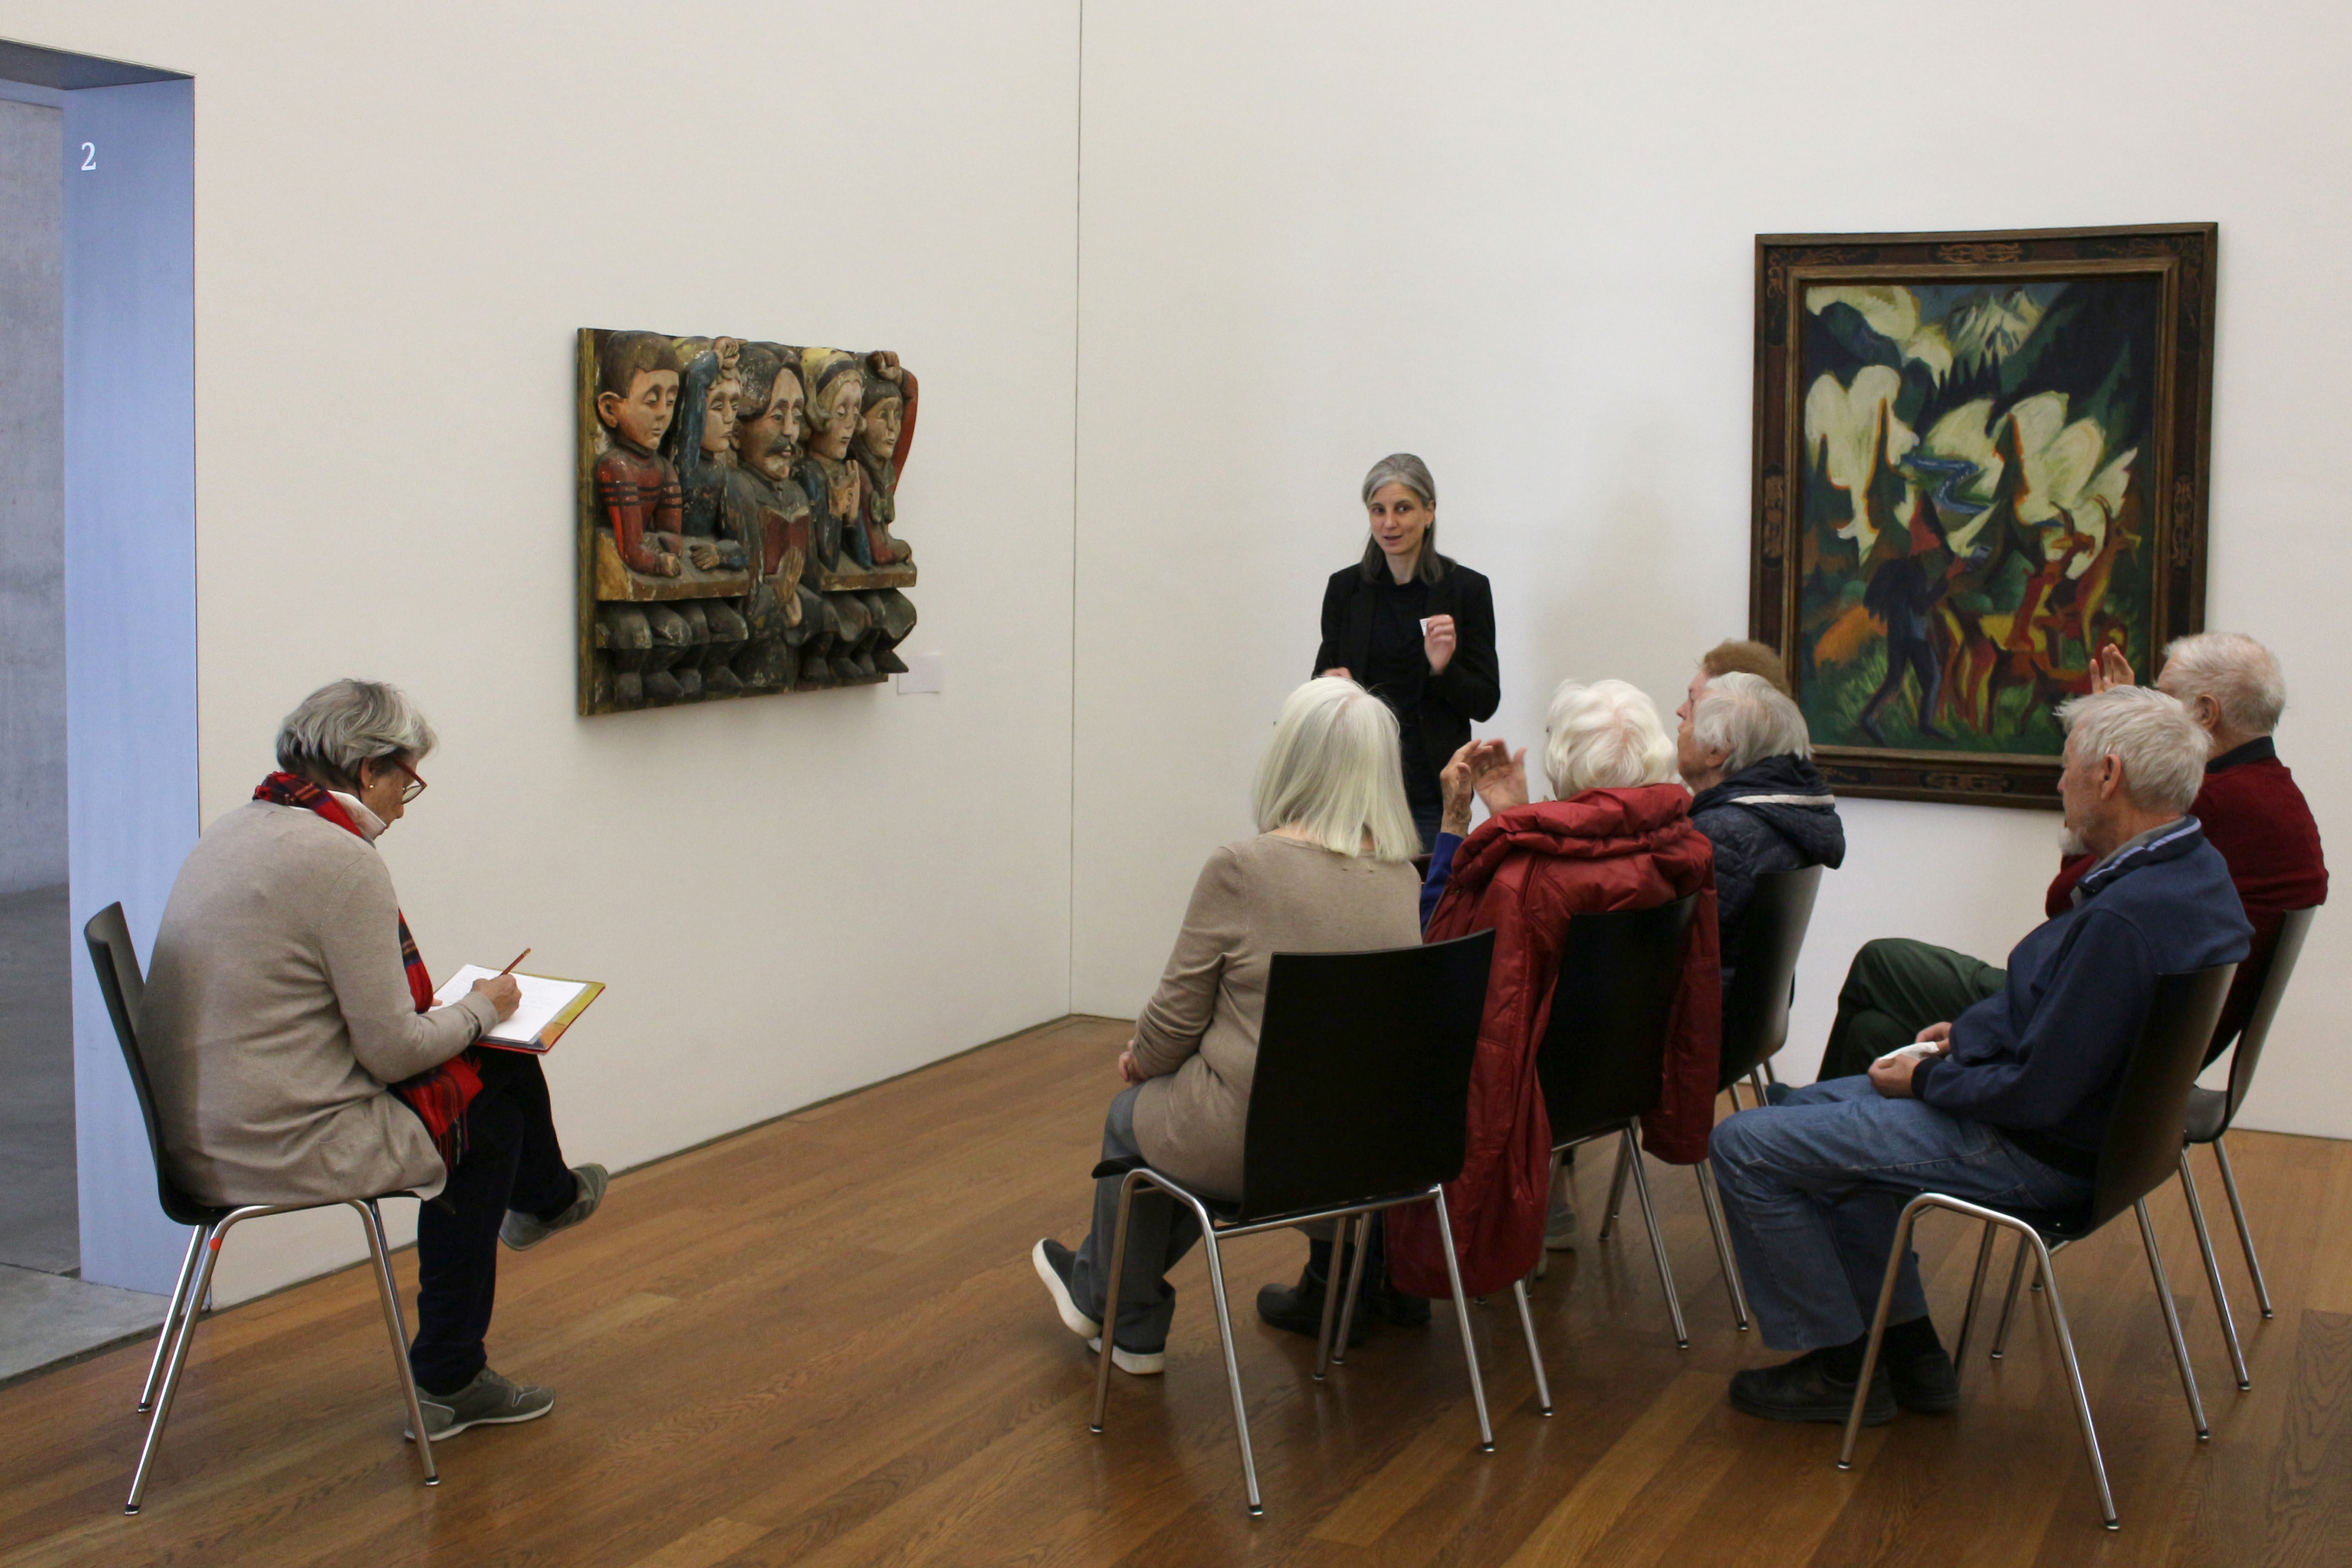 Sechs ältere Menschen sitzen vor einem Holzrelief, aus dem fünf menschliche Figuren den Betrachtenden frontal zugewandt sind. Eine Frau steht neben dem Relief und blickt zu den Sitzenden. Etwas abseits sitzt eine Frau, die auf ein Papierblatt schreibt.